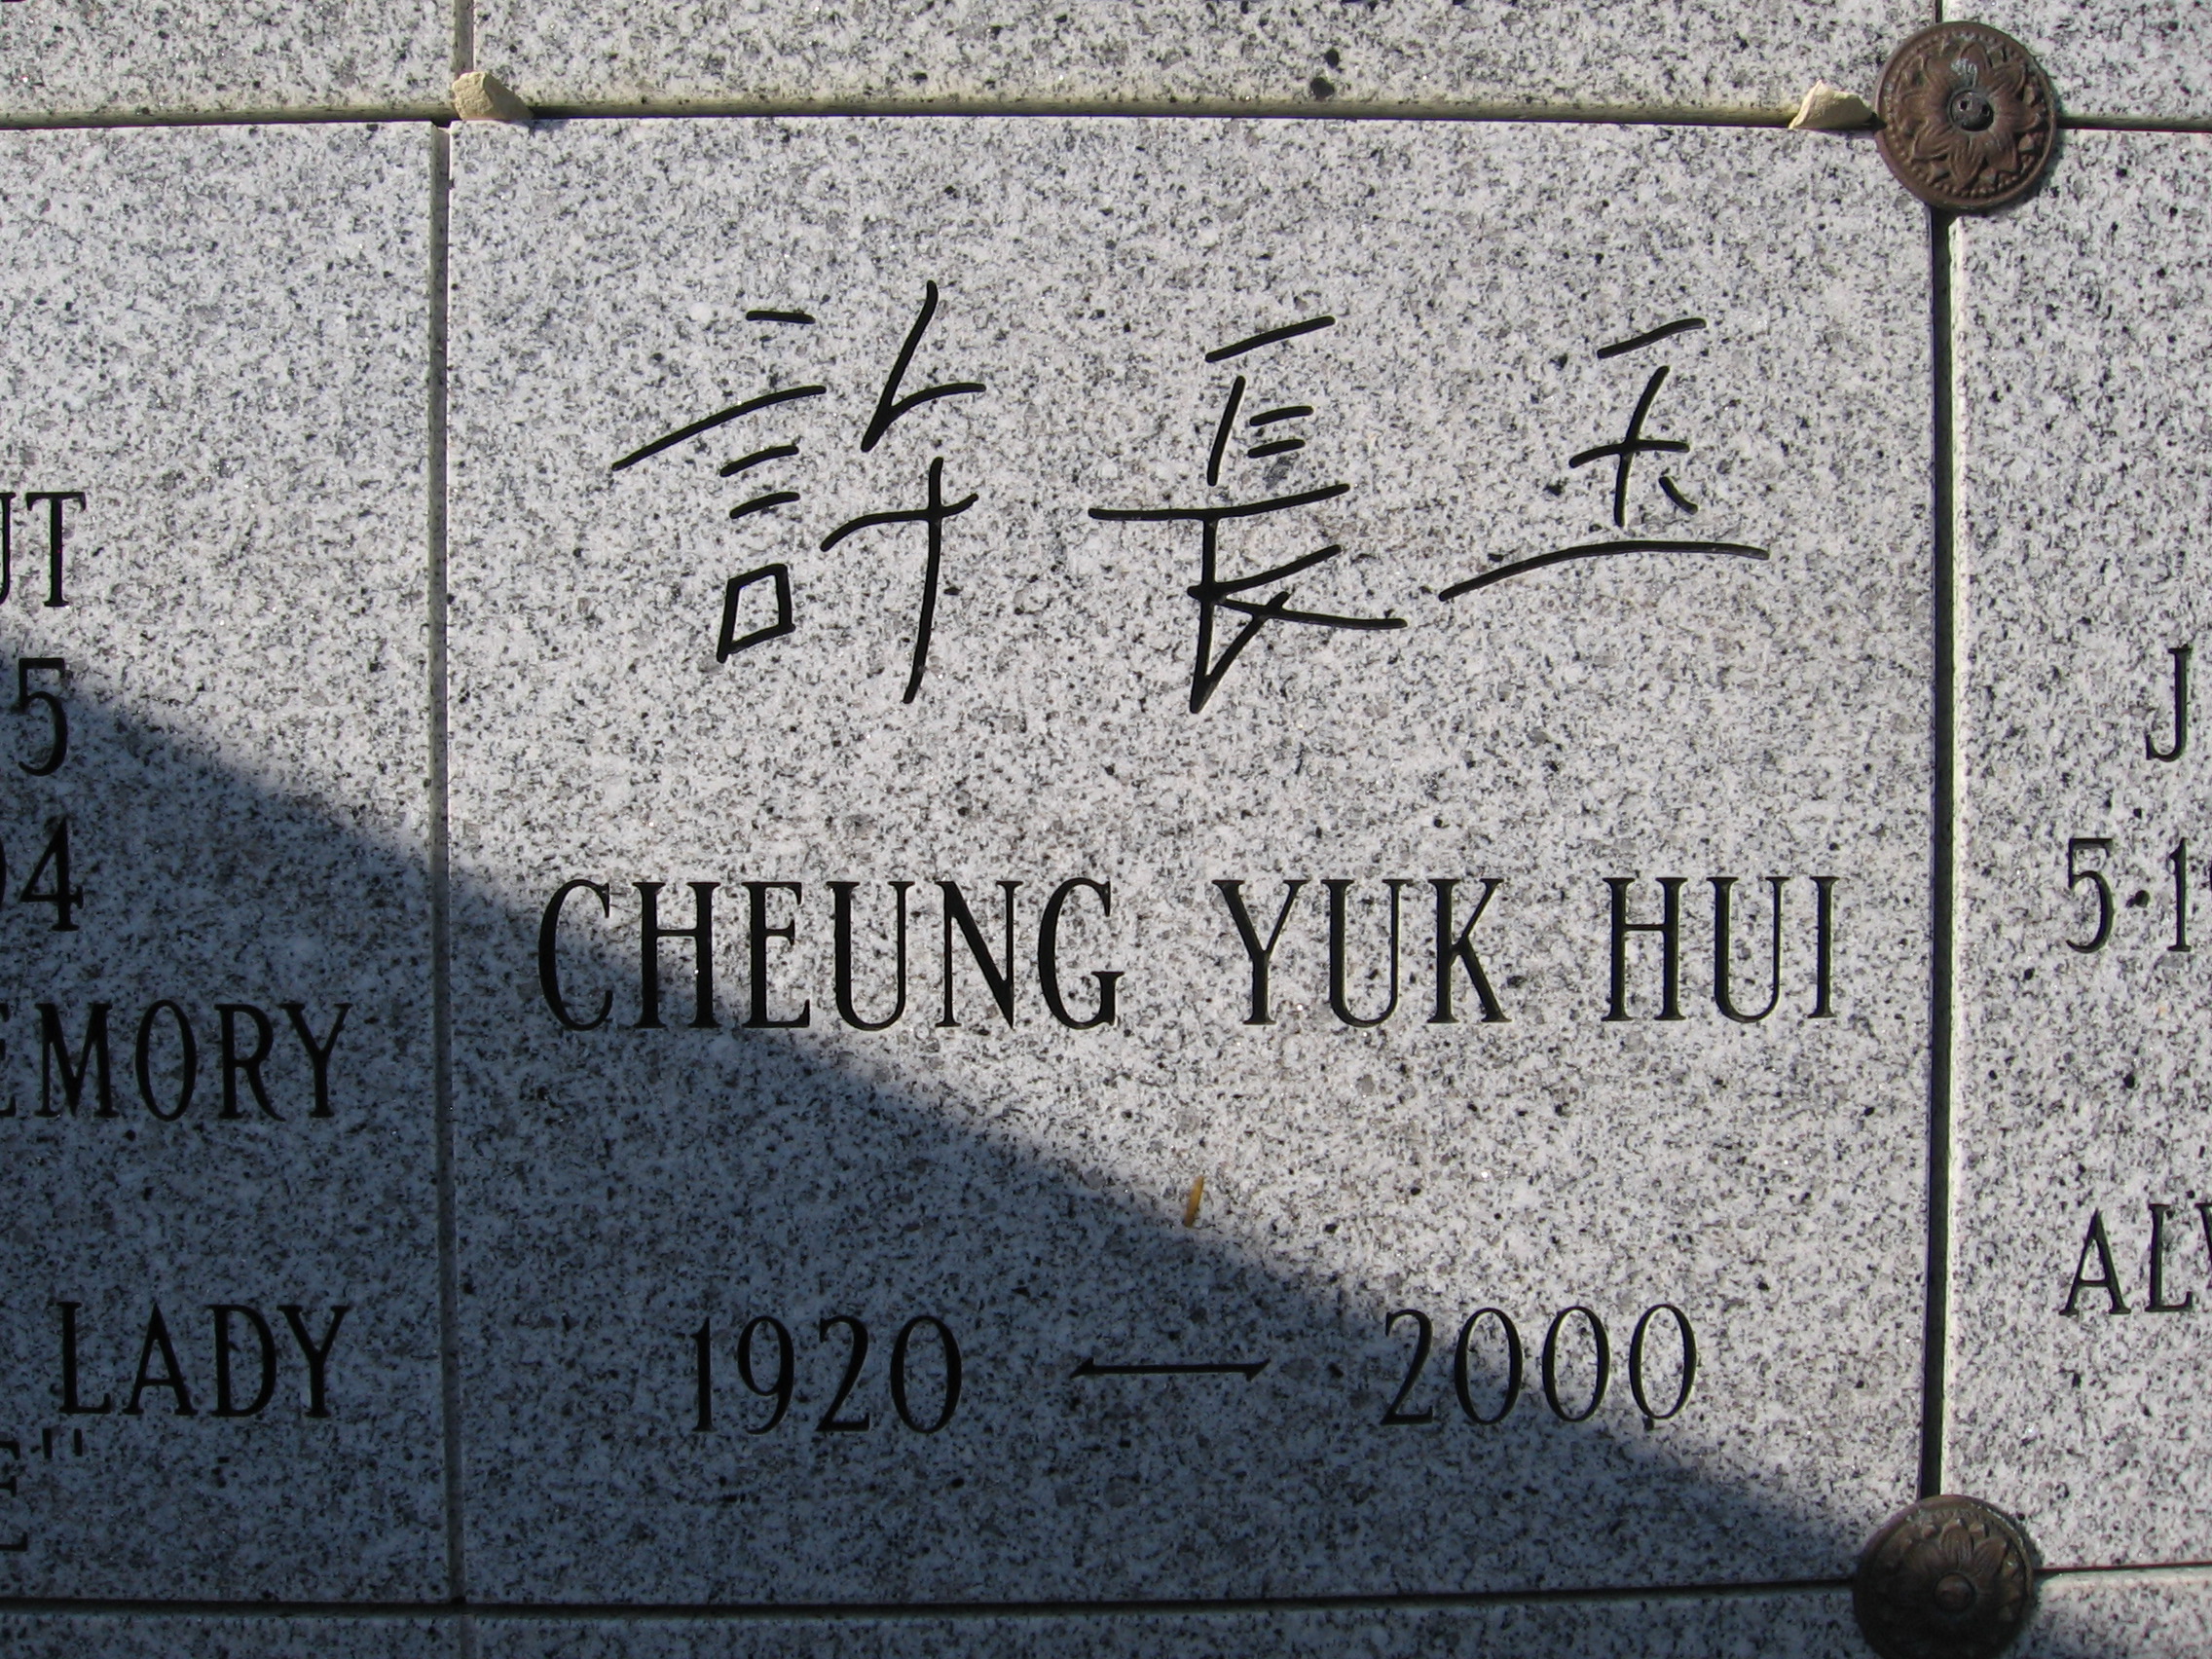 Cheung Yuk Hui